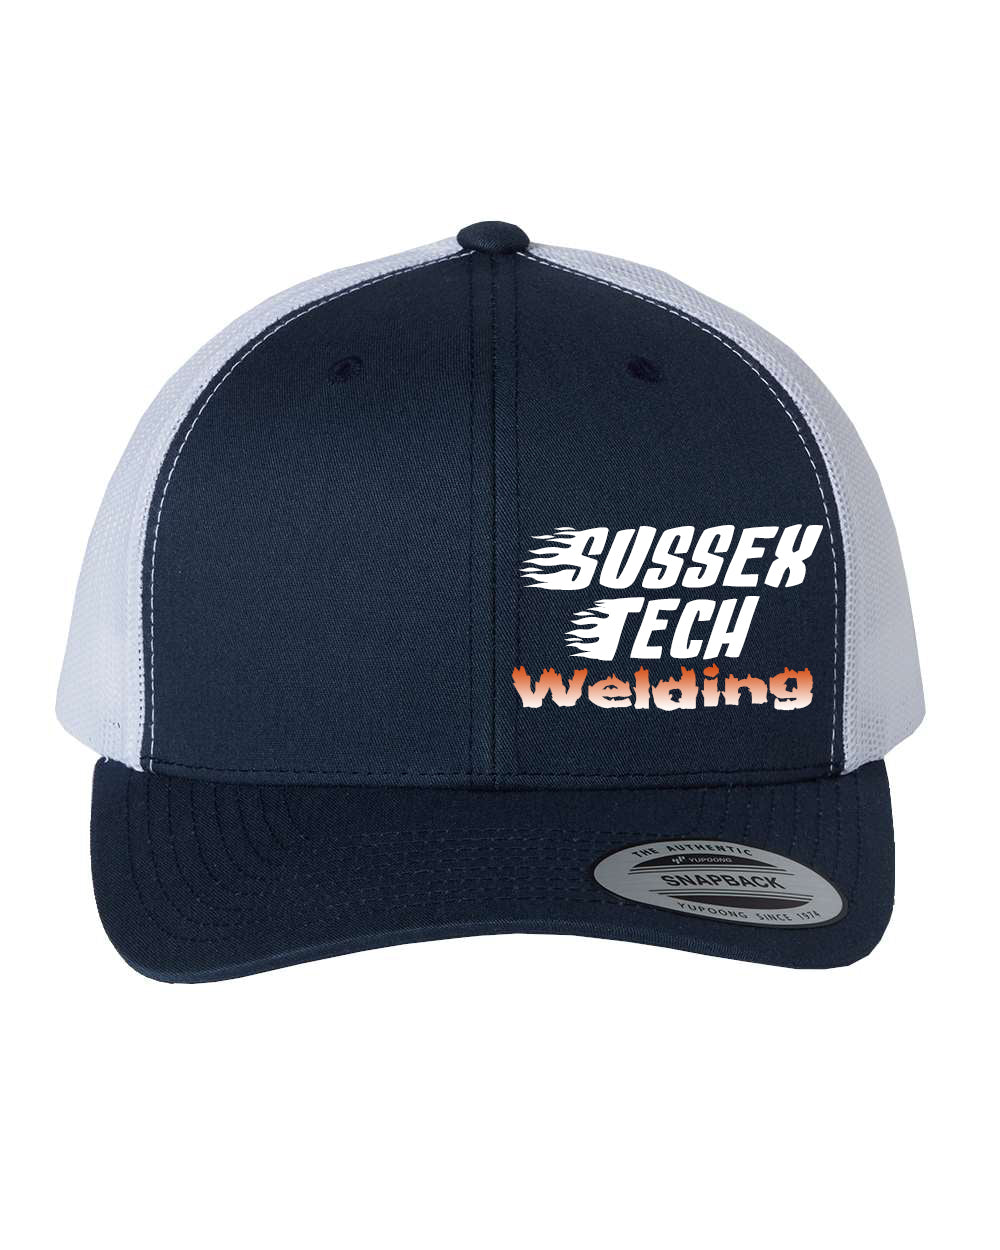 Sussex Tech Welding Design 4 Trucker Hat